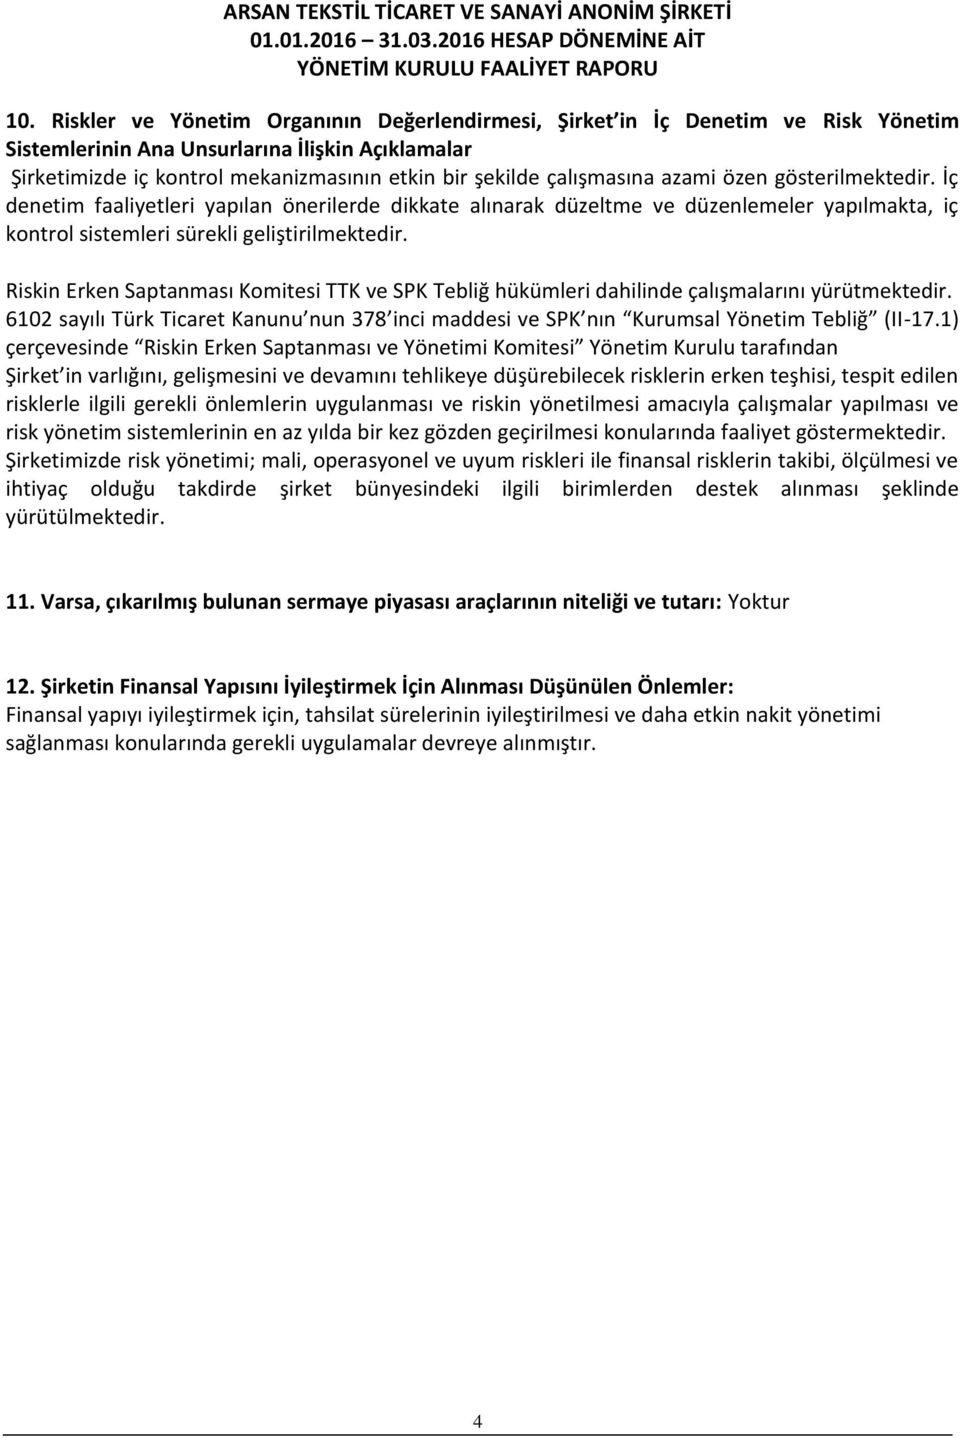 Riskin Erken Saptanması Komitesi TTK ve SPK Tebliğ hükümleri dahilinde çalışmalarını yürütmektedir. 6102 sayılı Türk Ticaret Kanunu nun 378 inci maddesi ve SPK nın Kurumsal Yönetim Tebliğ (II-17.